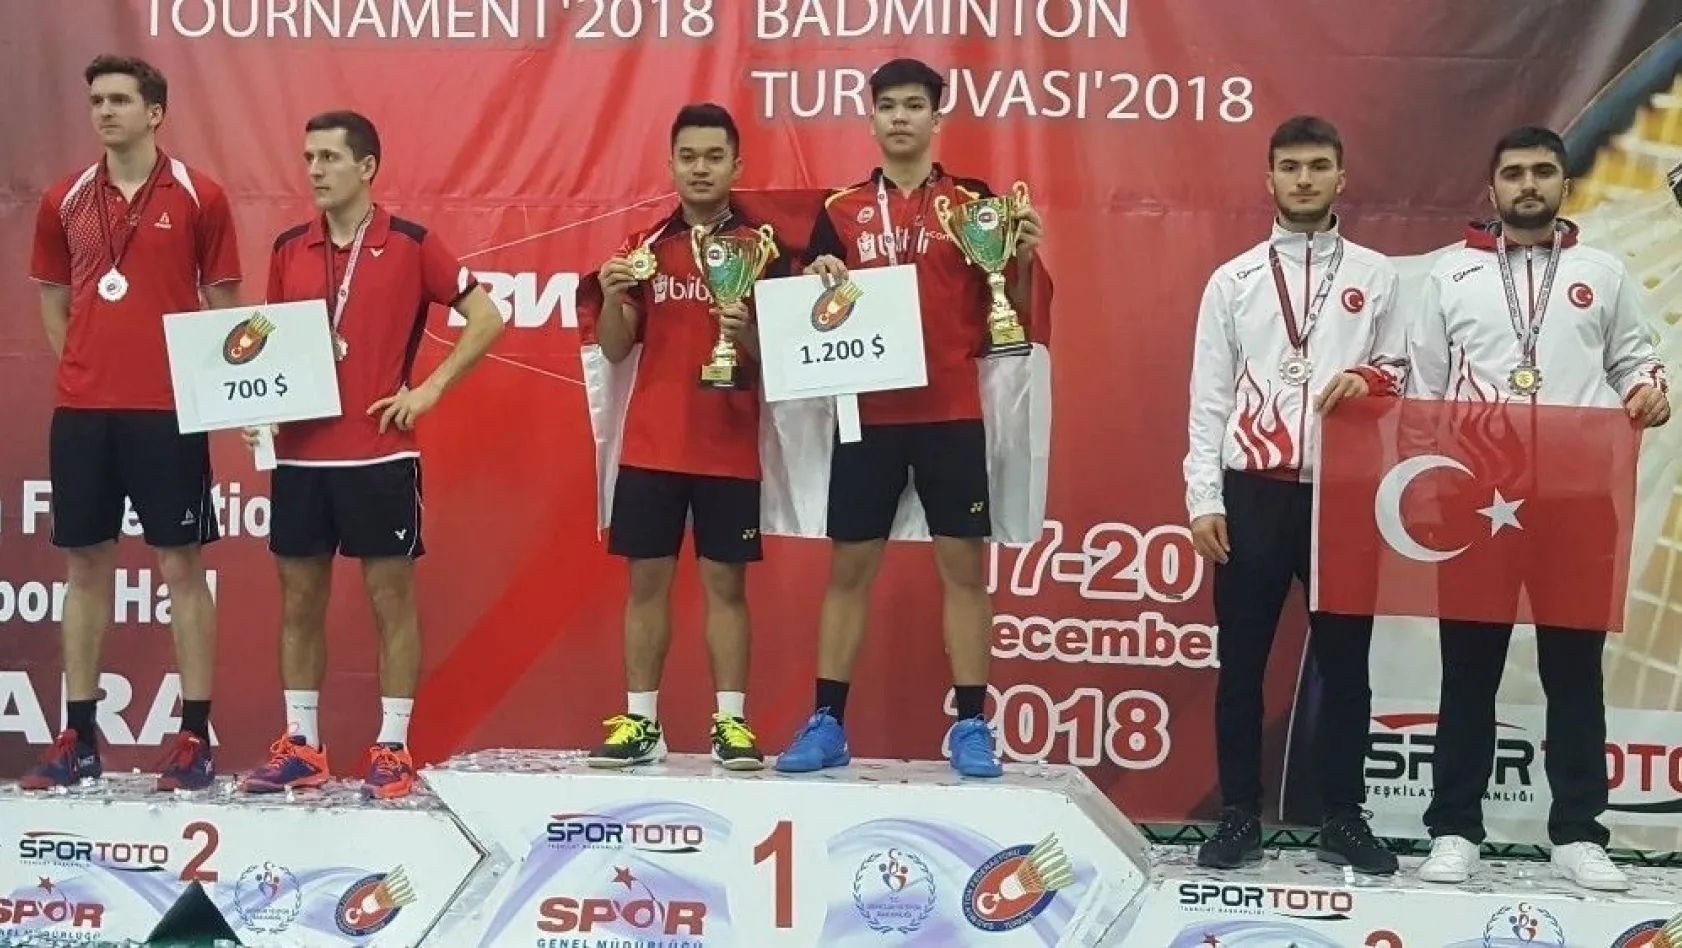 Erzincanlı Milli badmintonculardan başarı
